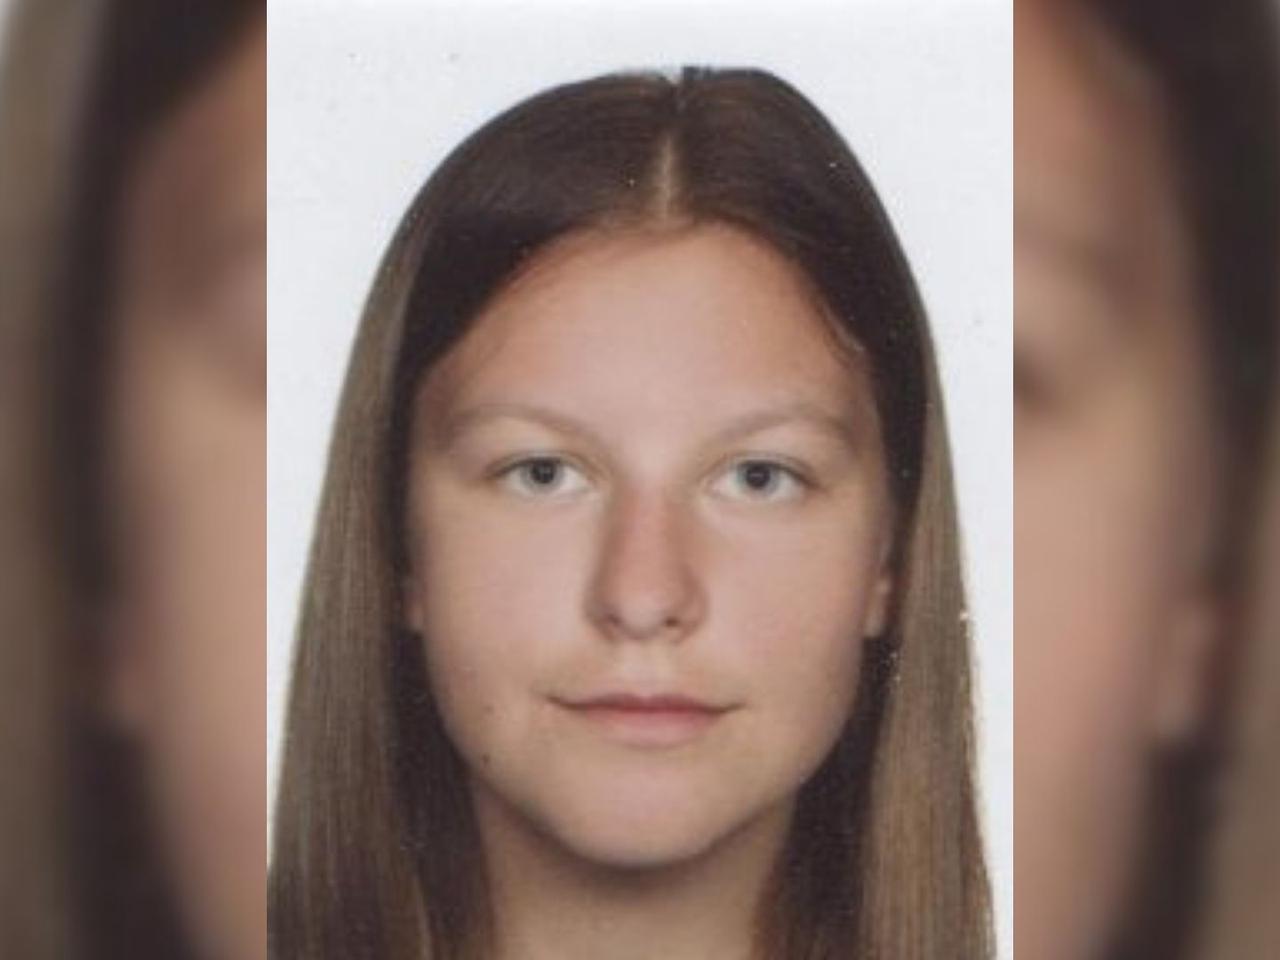 ZAGINIONA MARTA KSIĘŻYCKA - 16-latka mogła uciec z domu